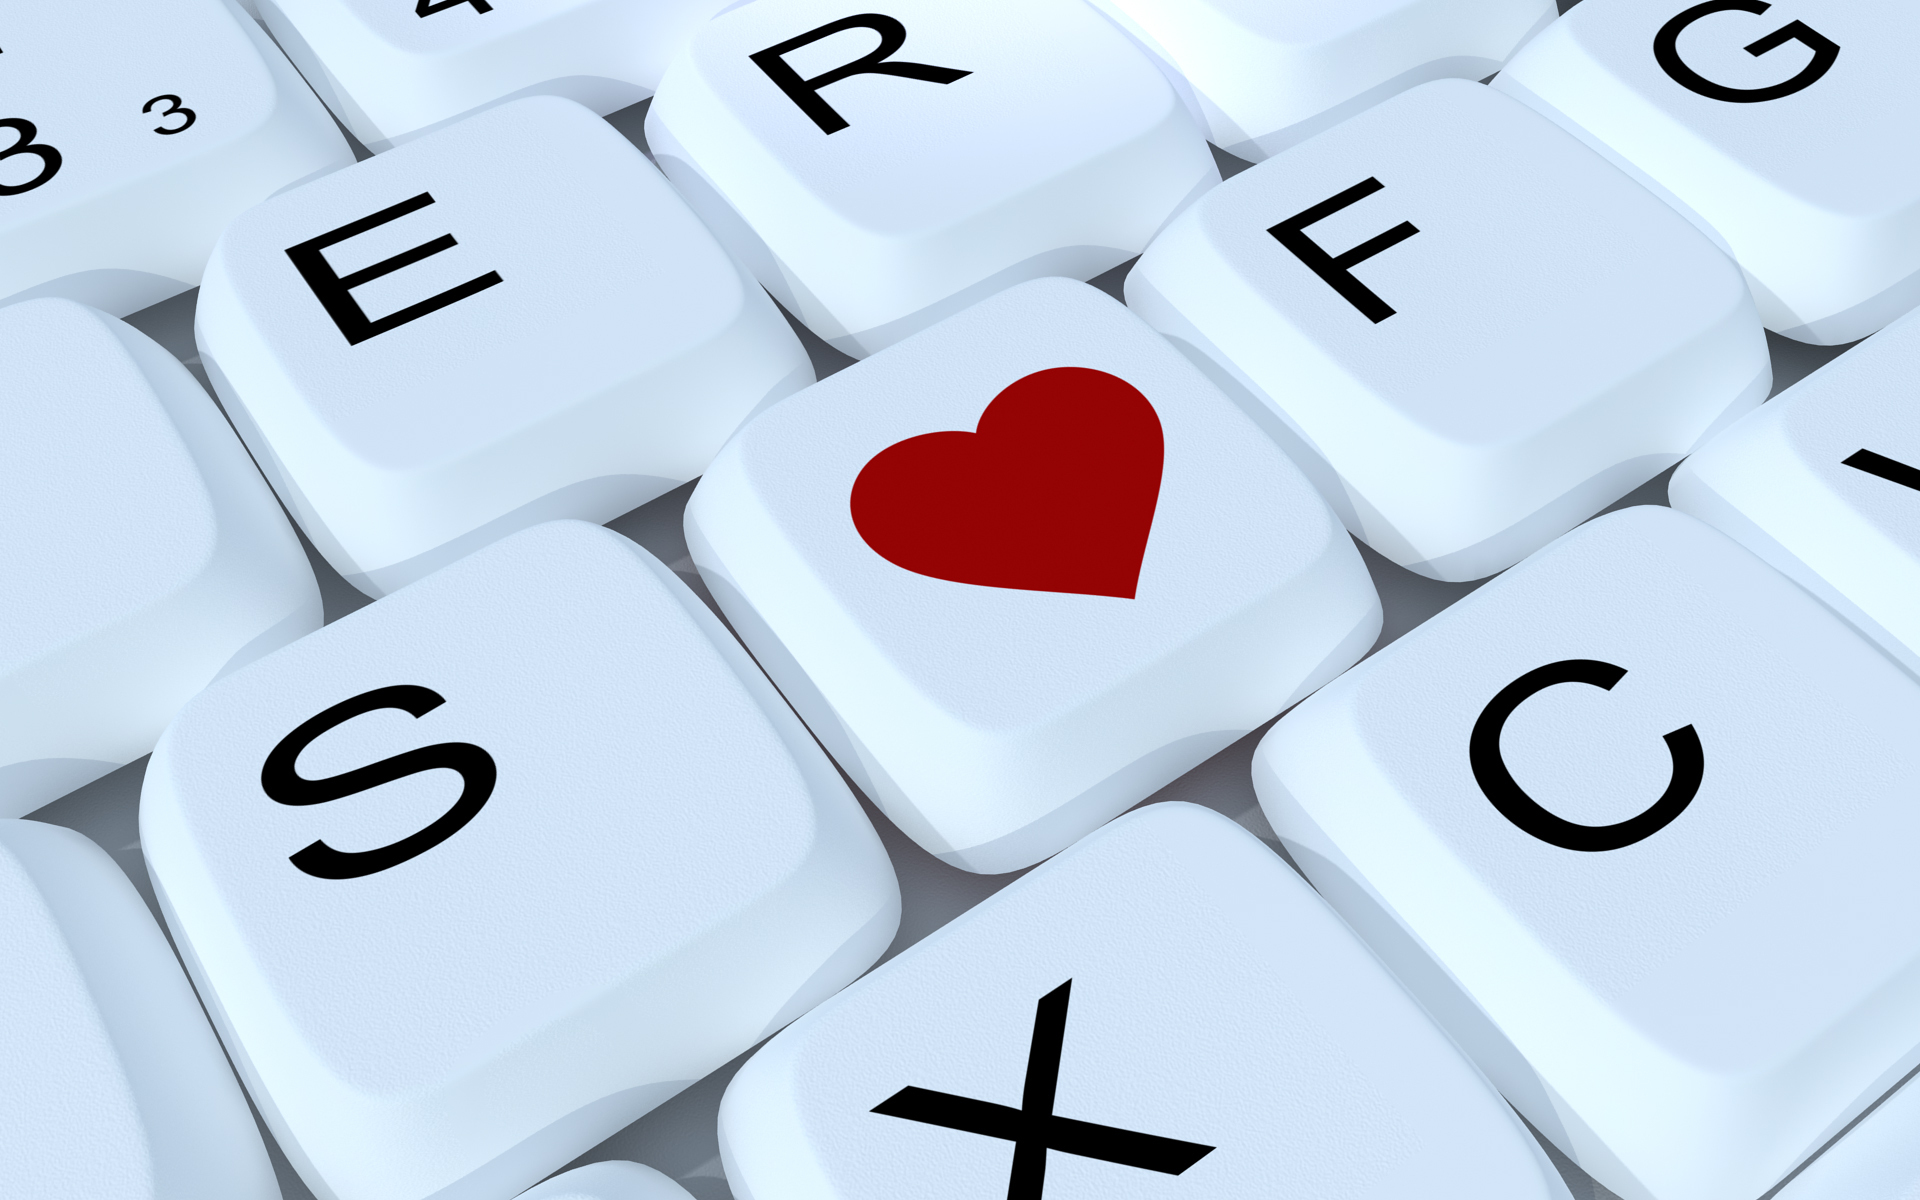 Keyboard Love Heart Key Wallpaper